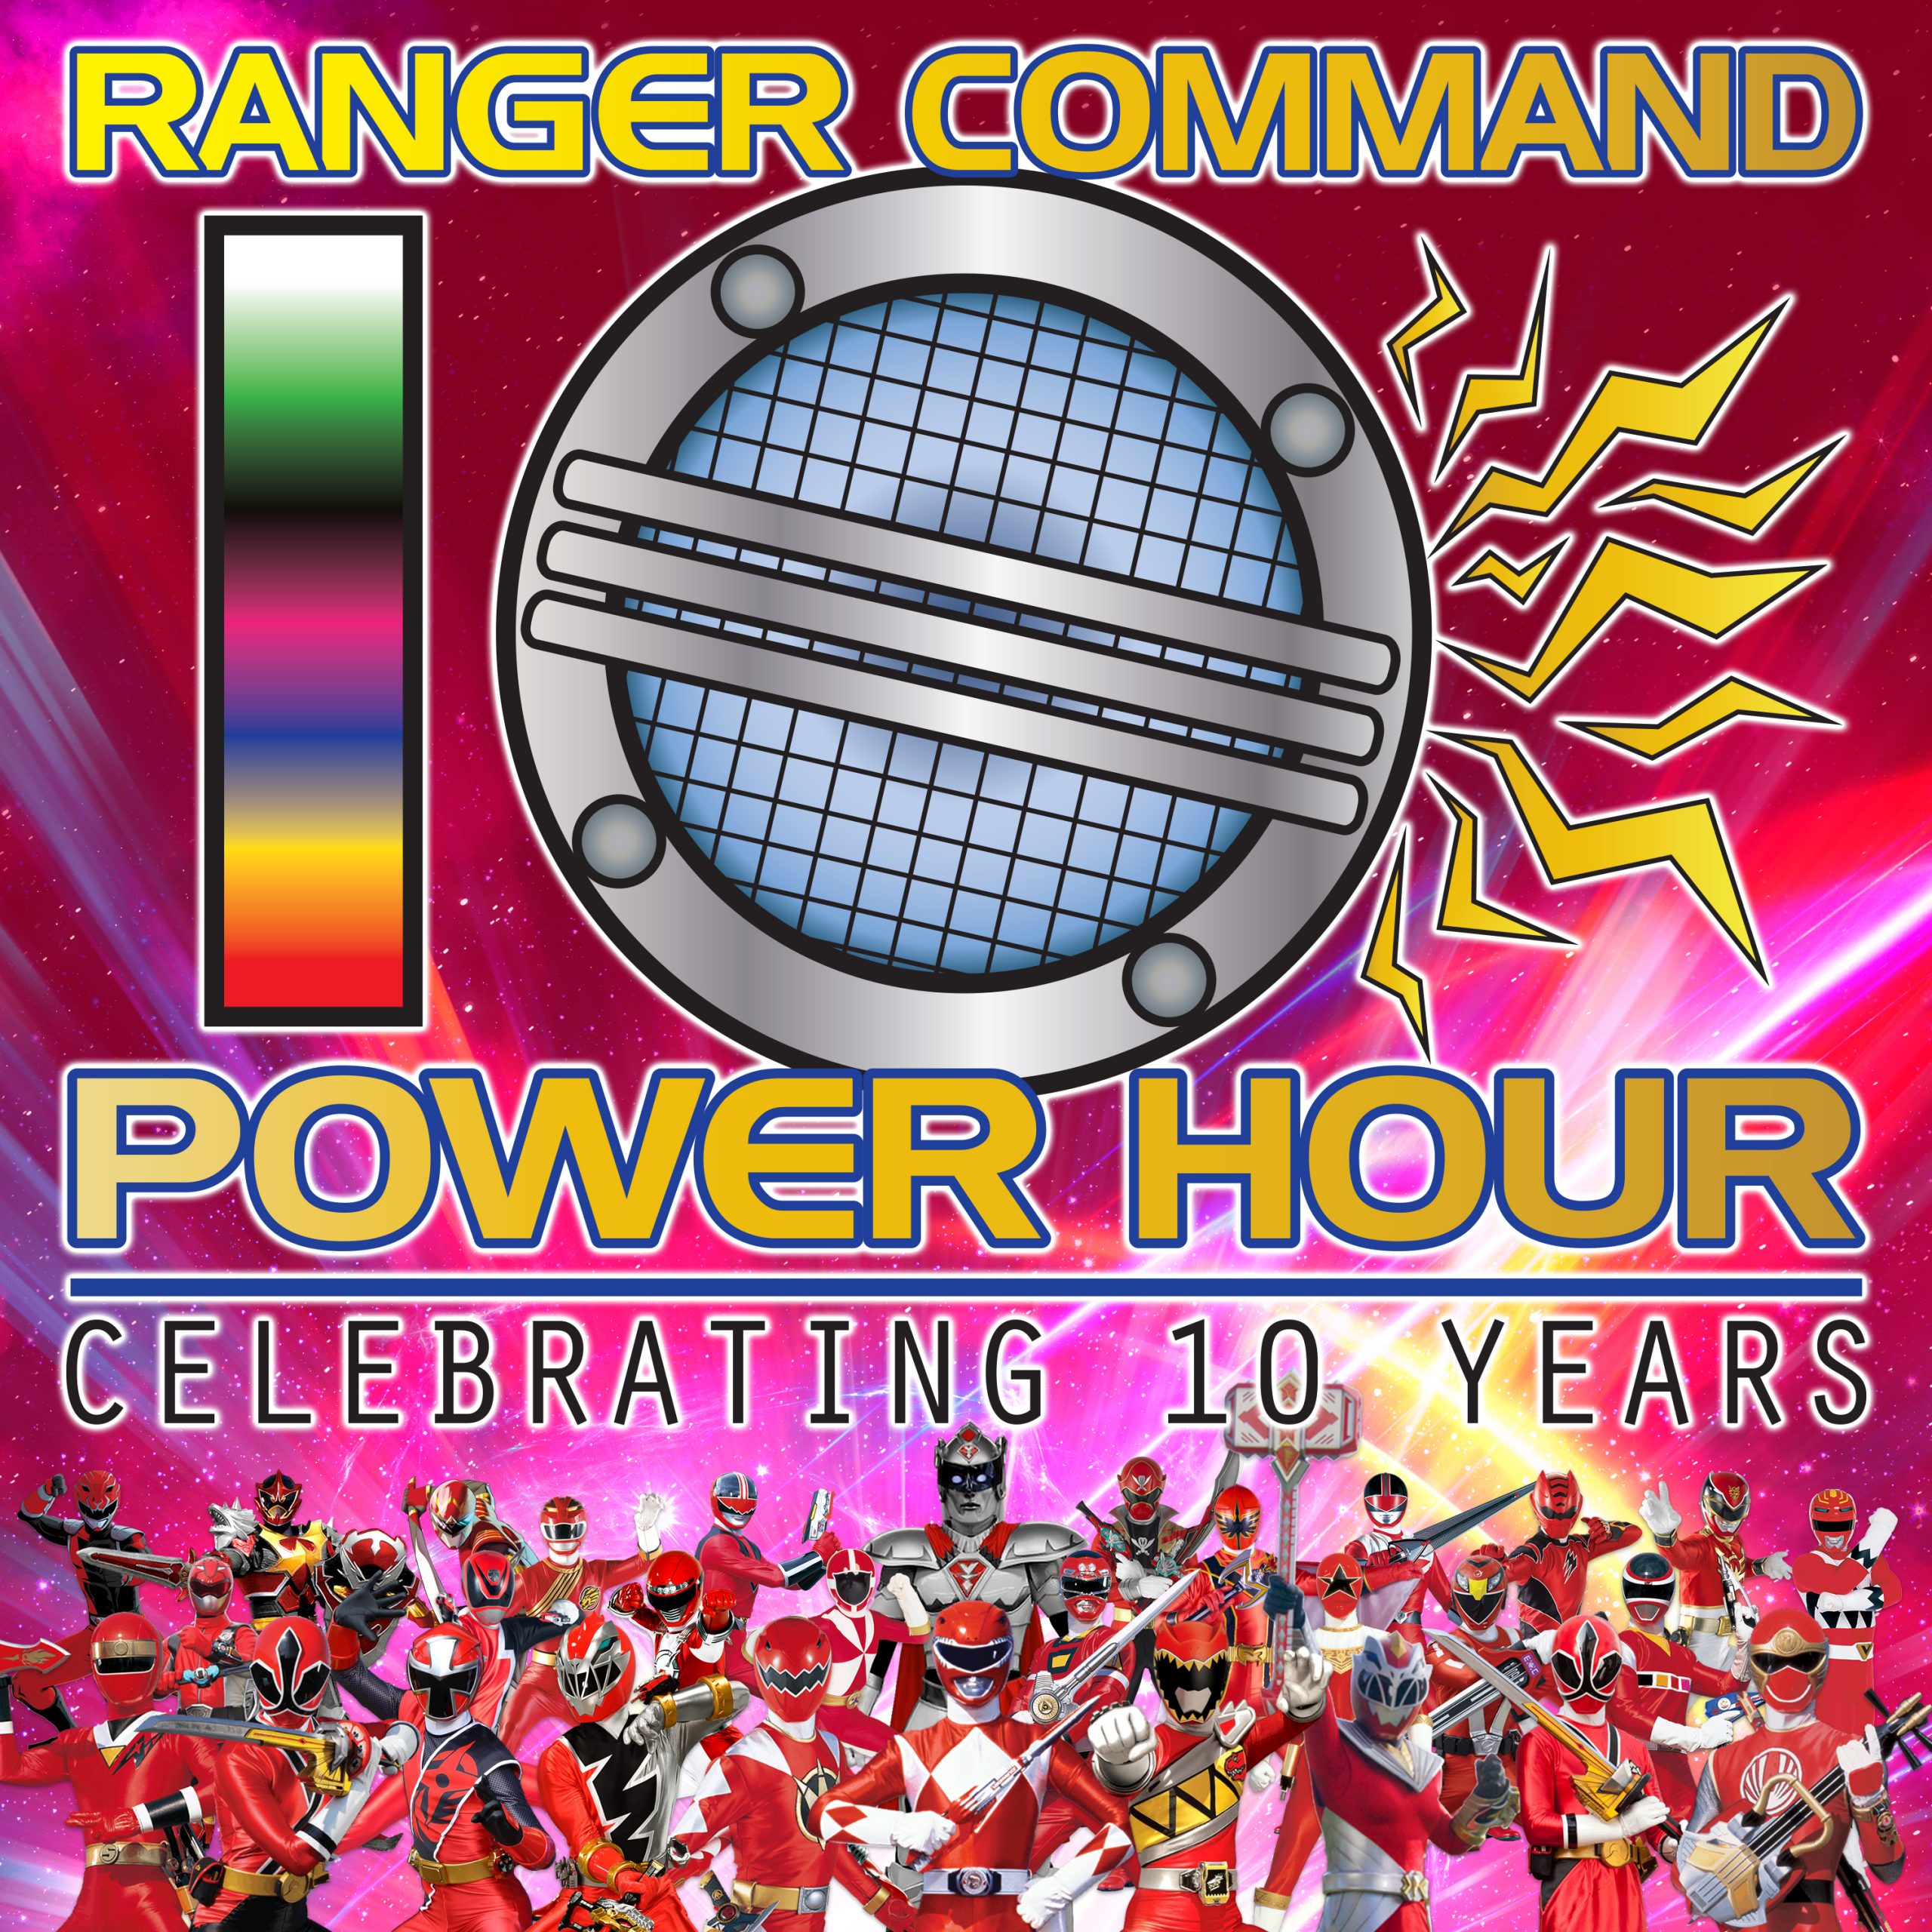 Ranger Command Power Hour